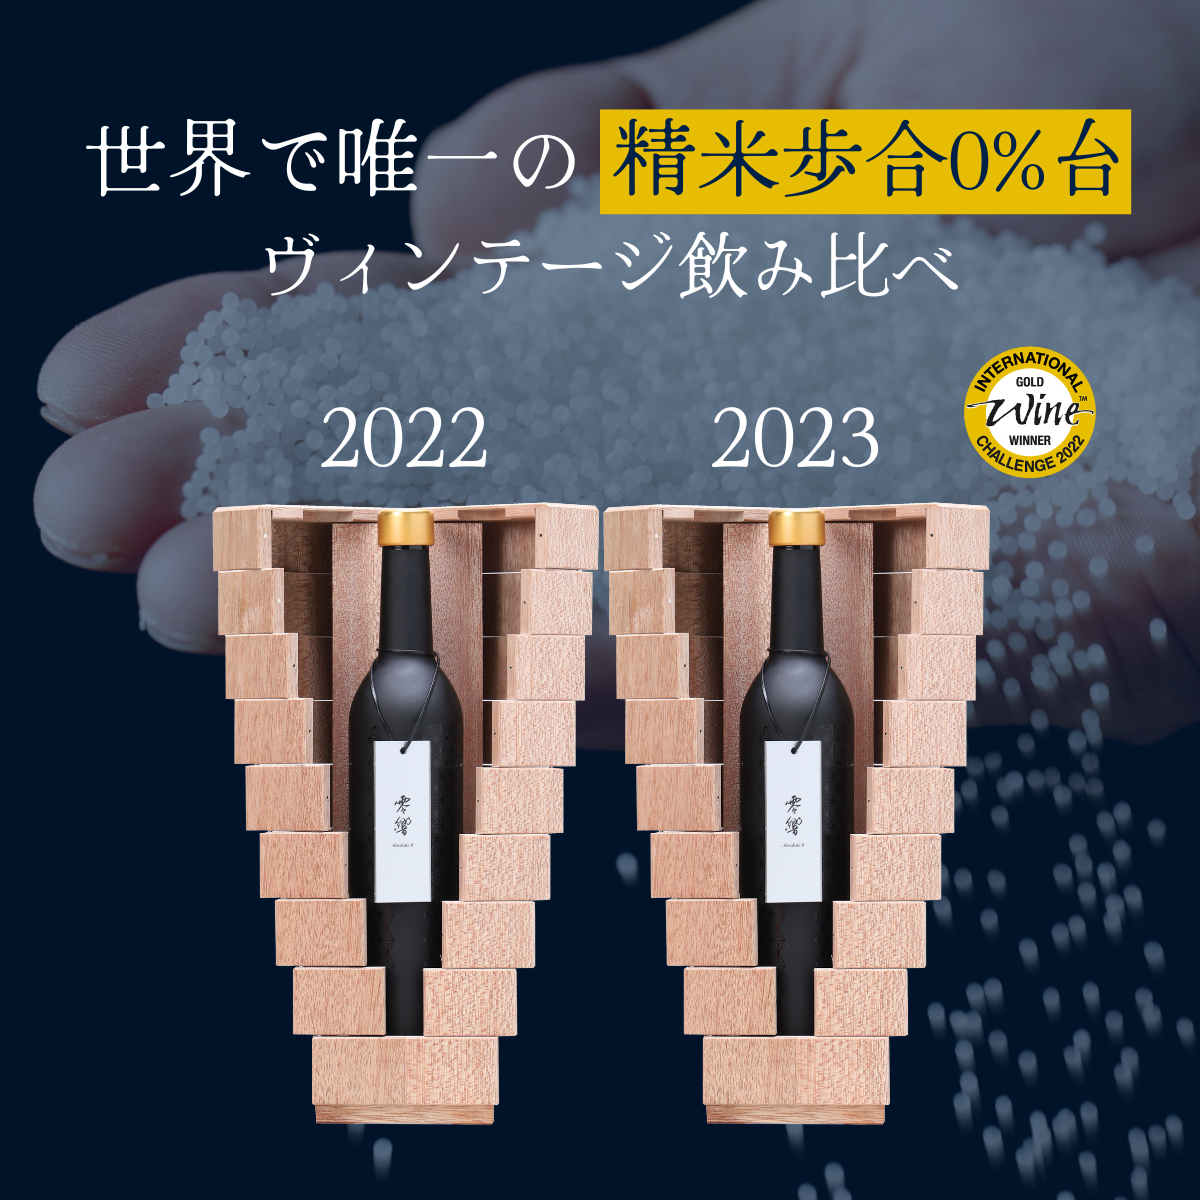 「零響(れいきょう)」2022・2023 ヴィンテージ飲み比べセット500ml×2 【送料無料】